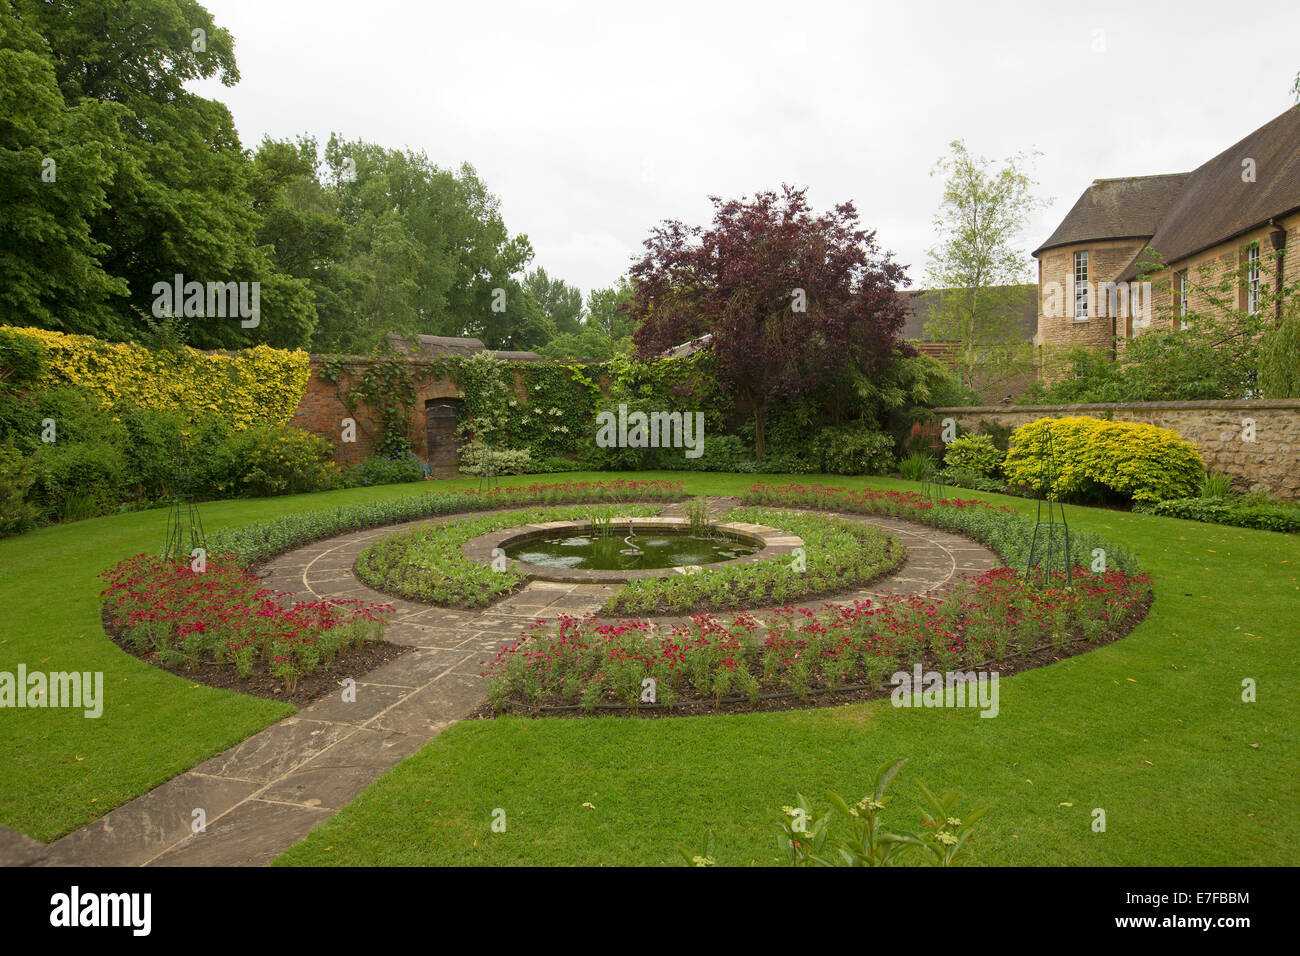 Formale ummauerten Garten mit Weg über smaragdgrünen Rasen führt, Wassereigenschaft, umgeben von großen kreisförmigen Gartenbeete mit roten Blumen runden Stockfoto